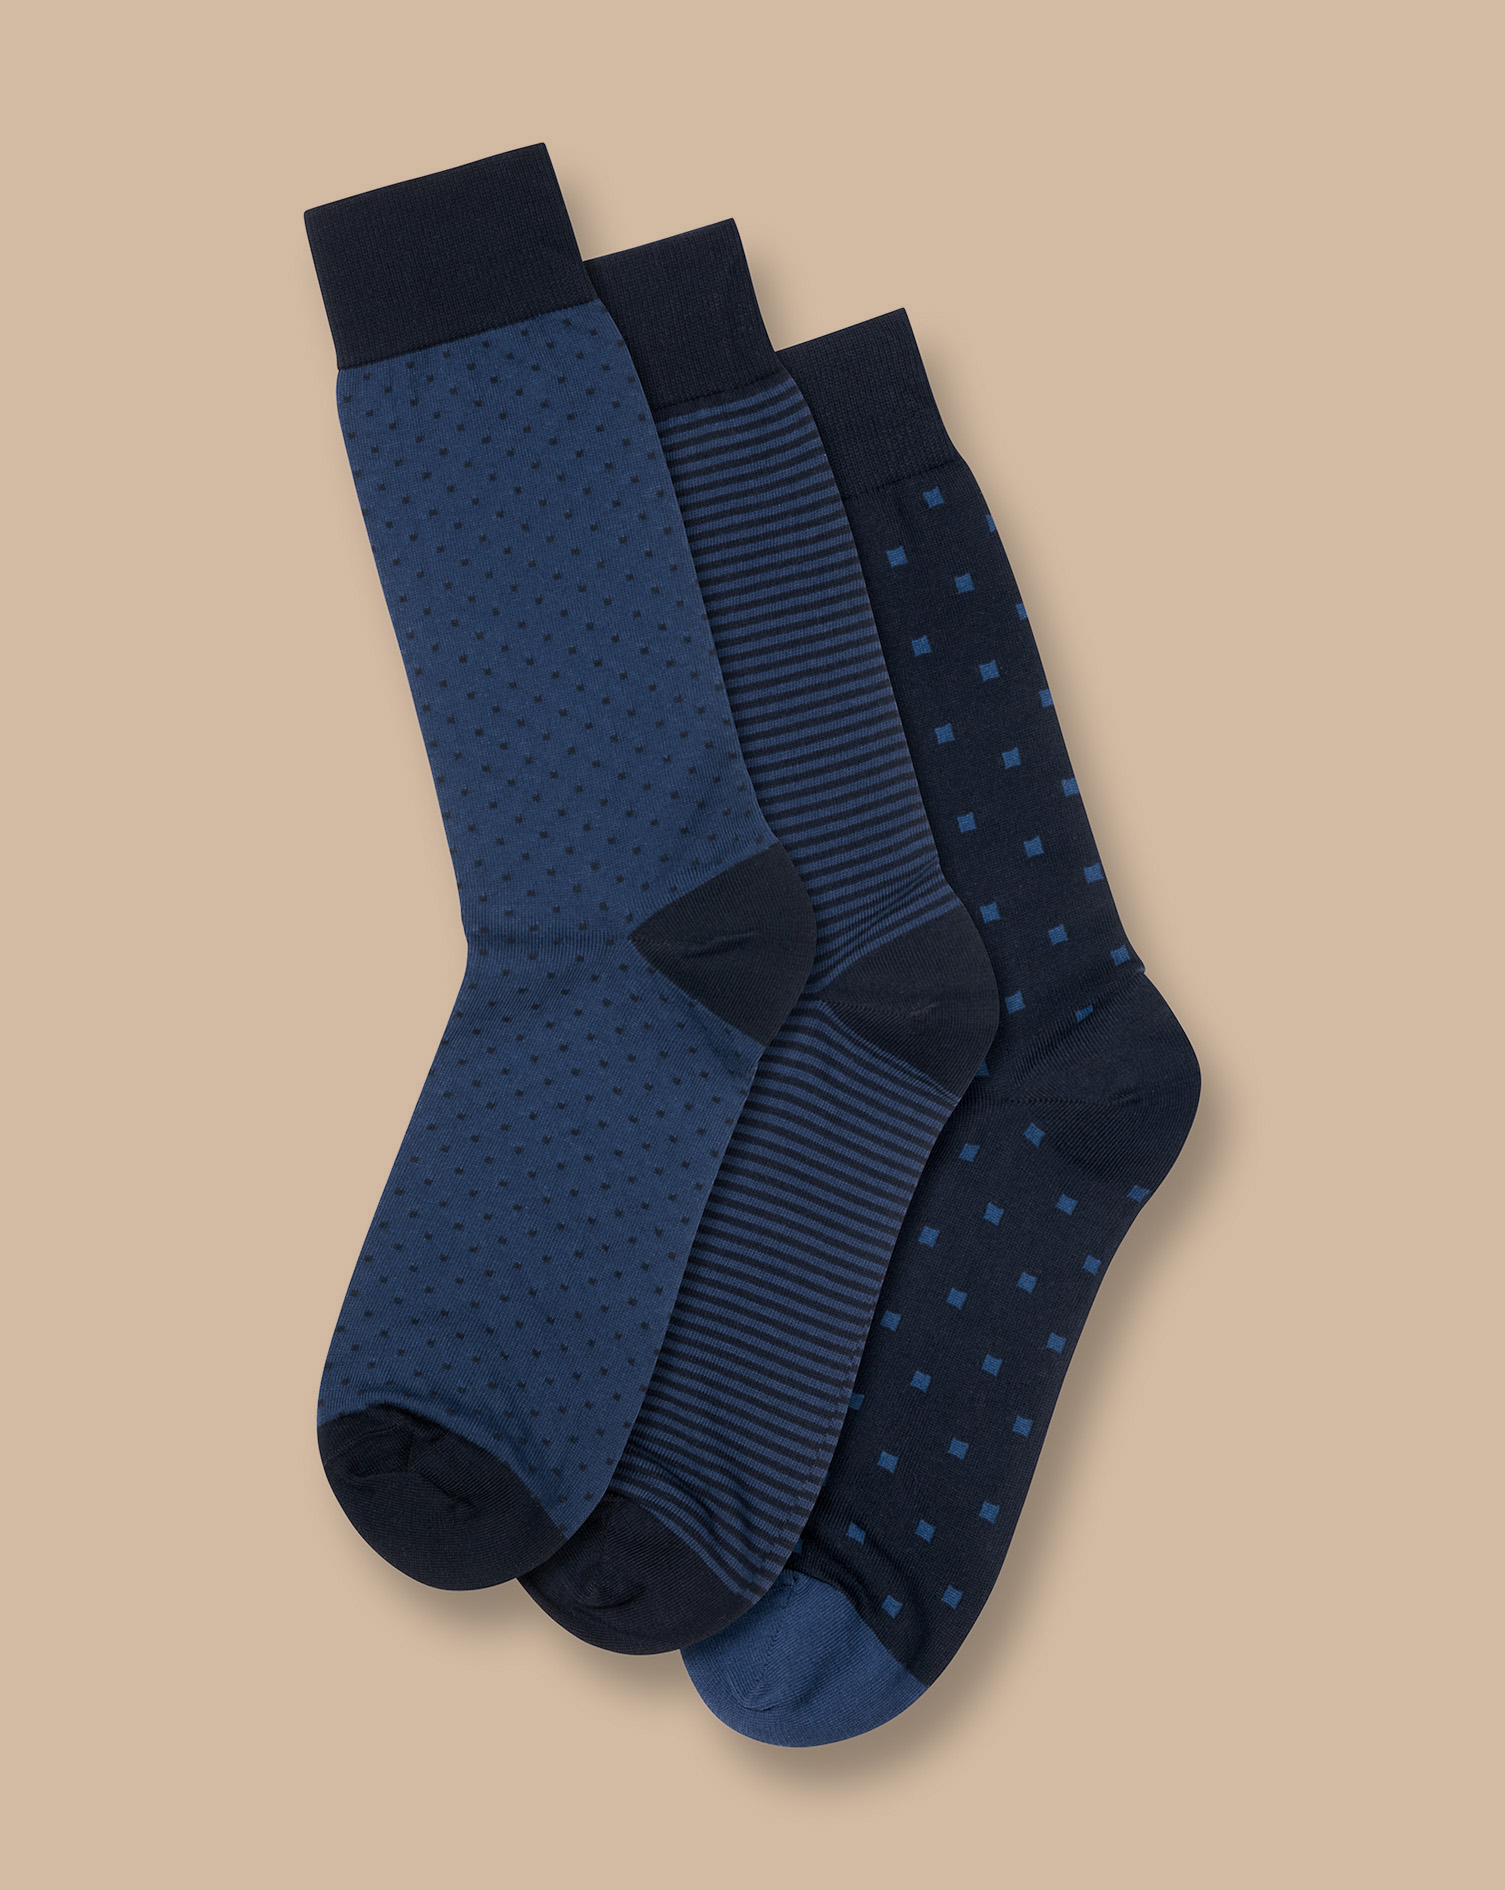 Men's Charles Tyrwhitt Patterned Rich 3 Pack Socks - Navy Multi Blue Size 10.5-13 Cotton
